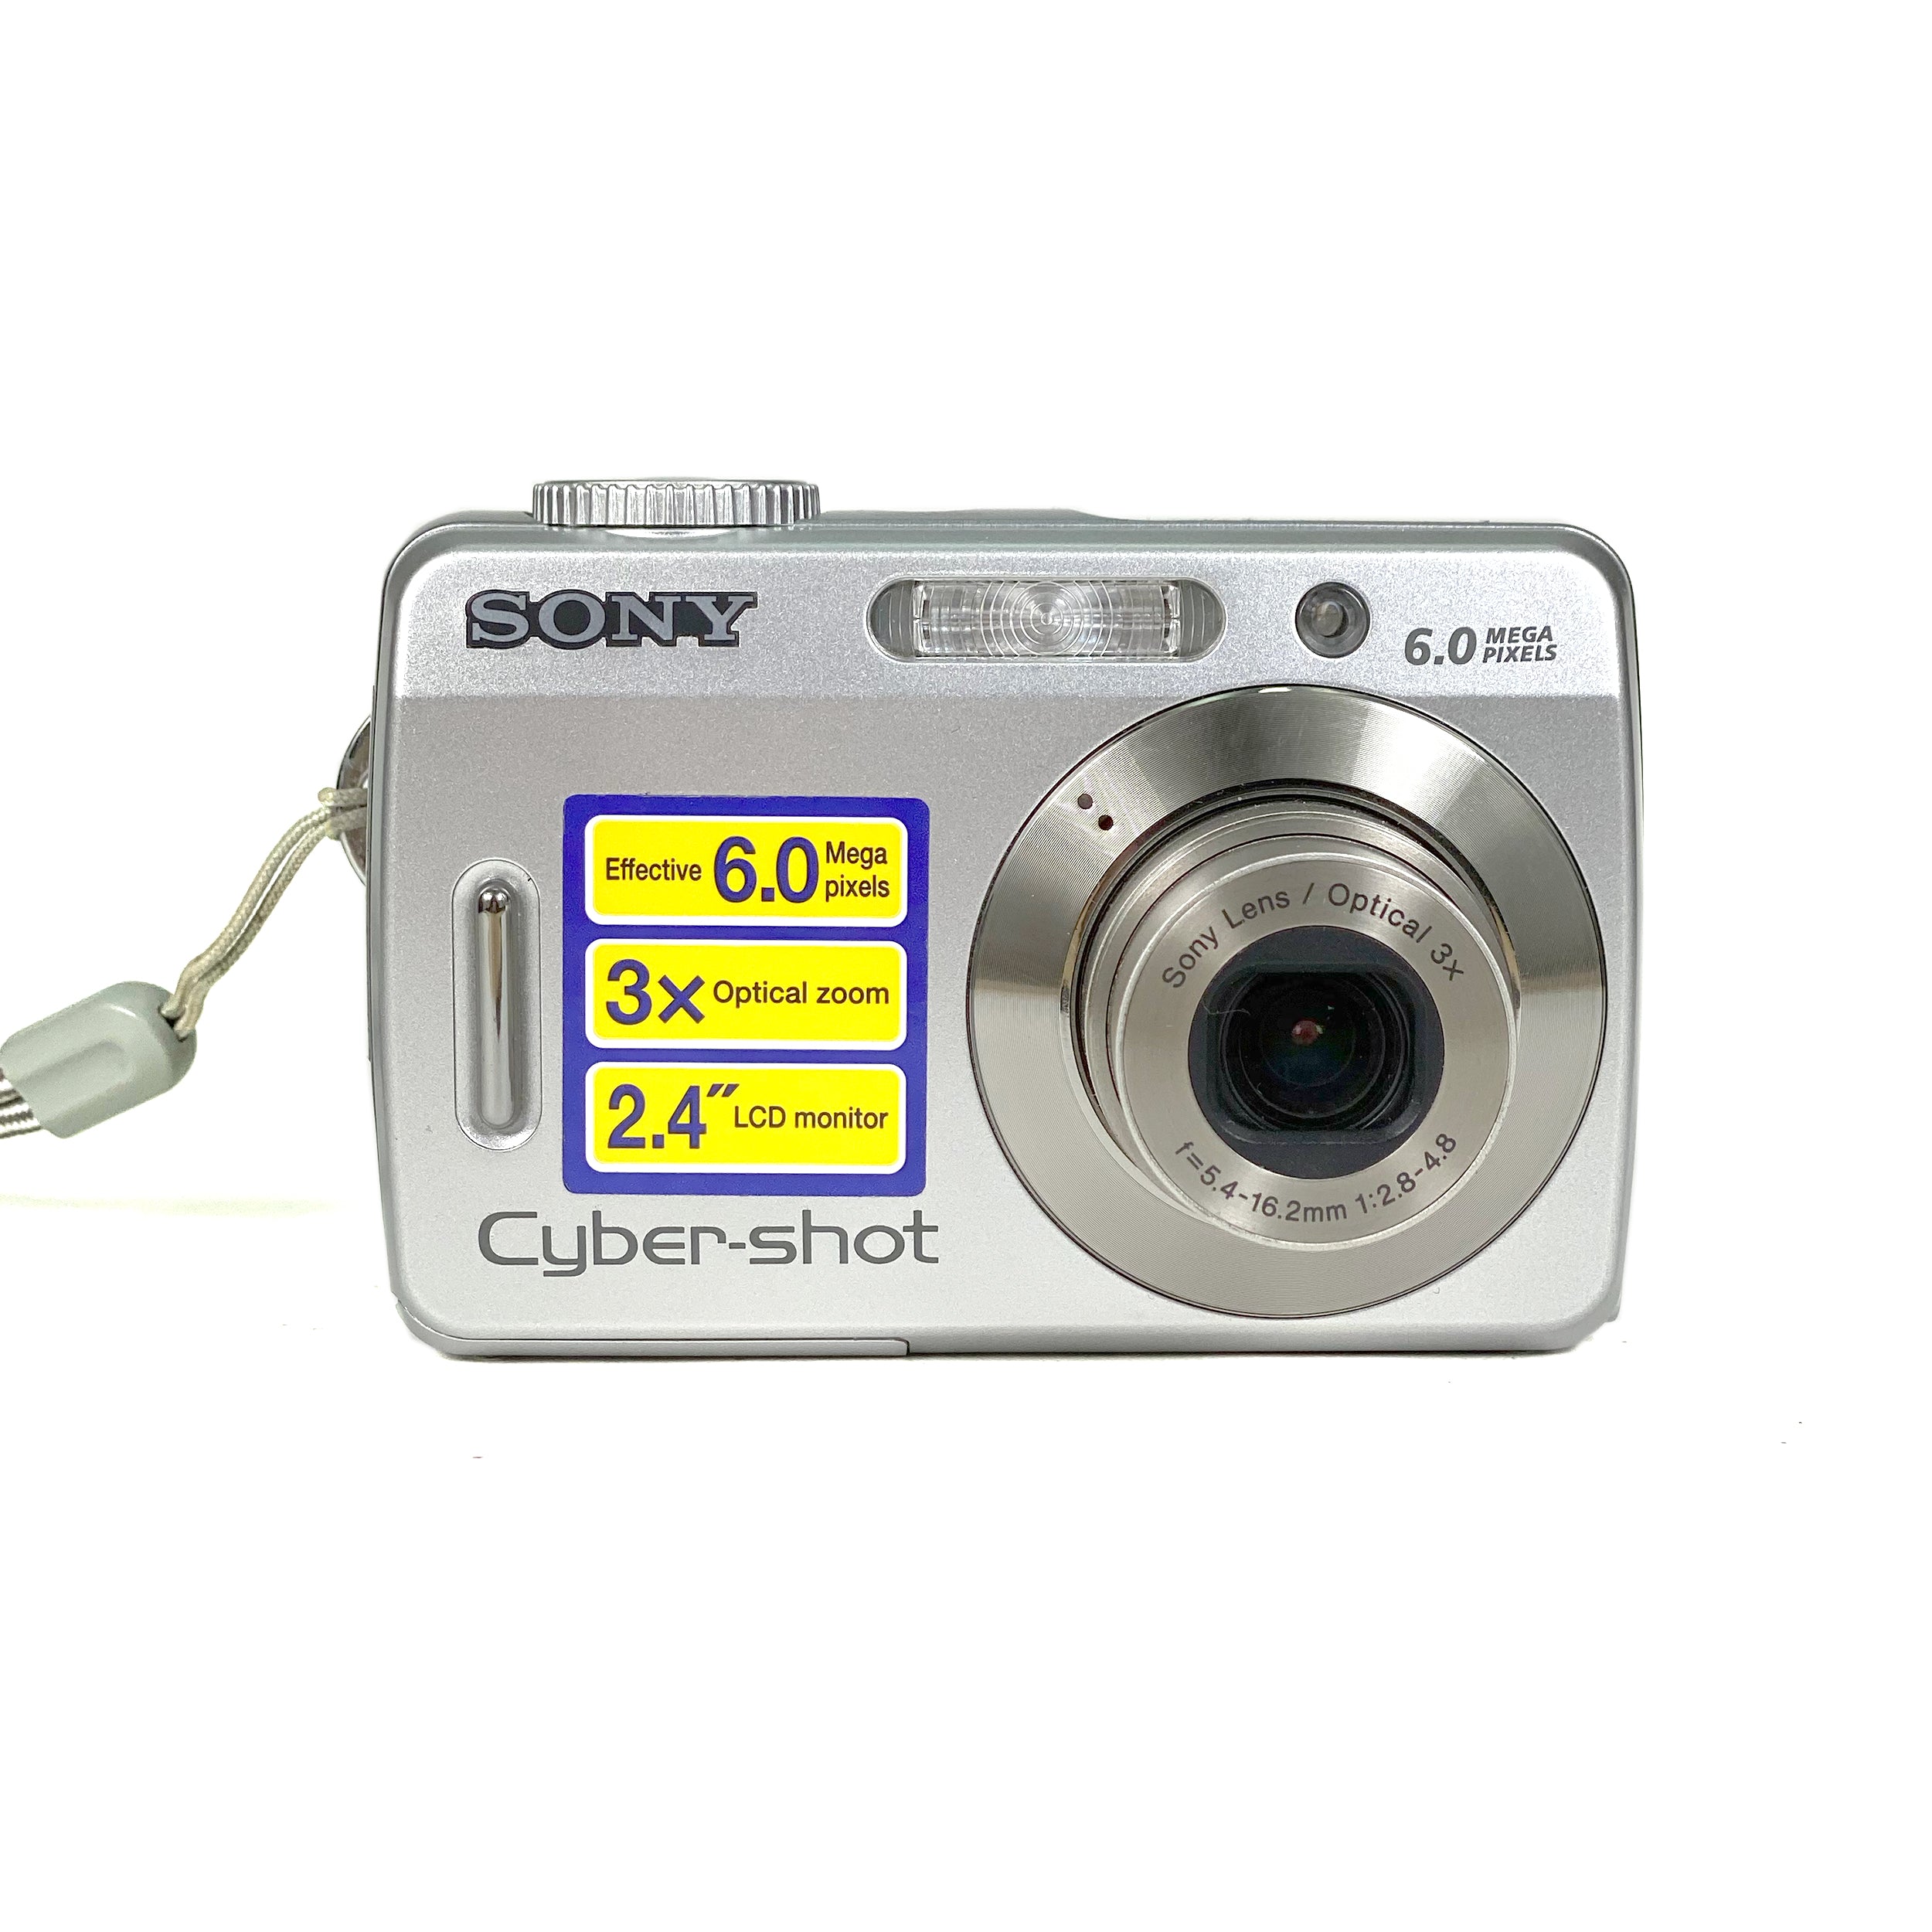  Sony Cybershot DSCW50 6MP Digital Camera with 3x